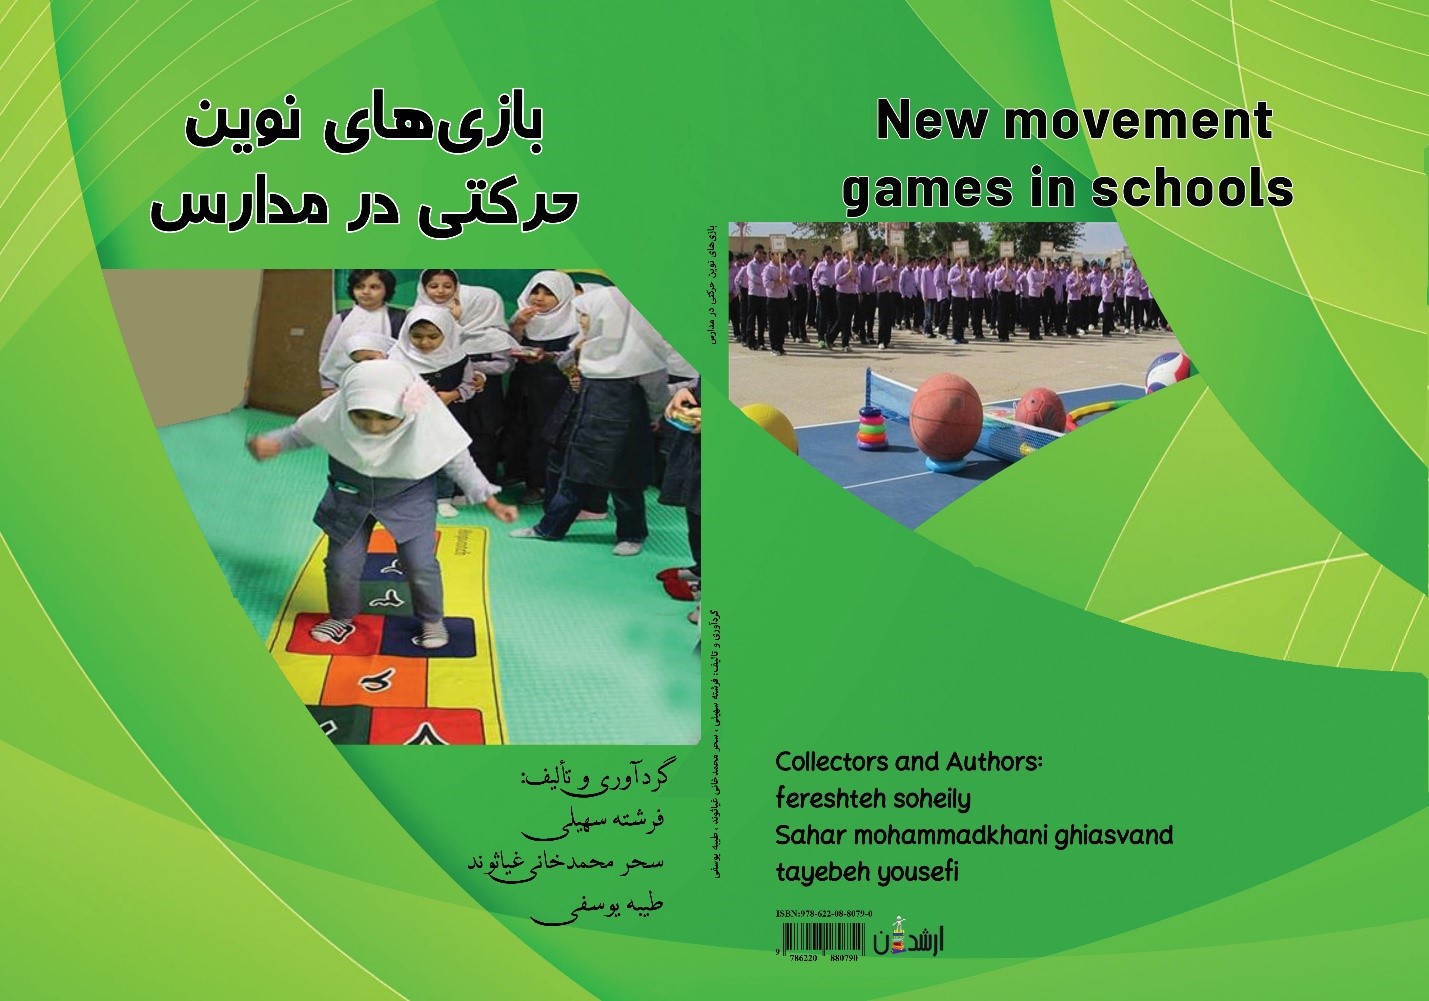 بازی های نوین حرکتی در مدارس